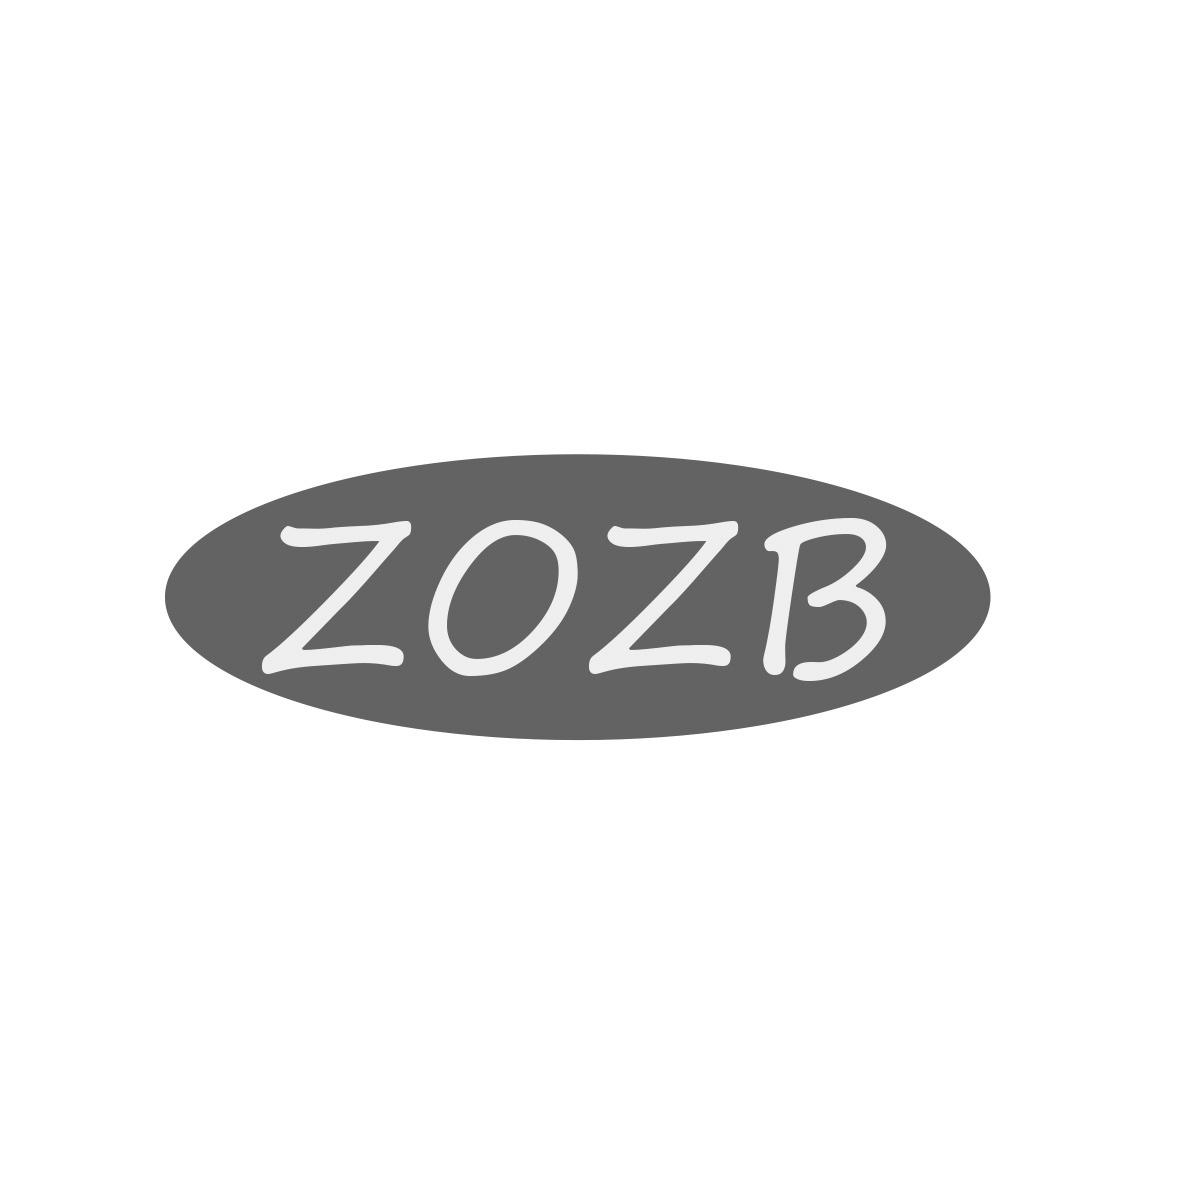 转让商标-ZOZB